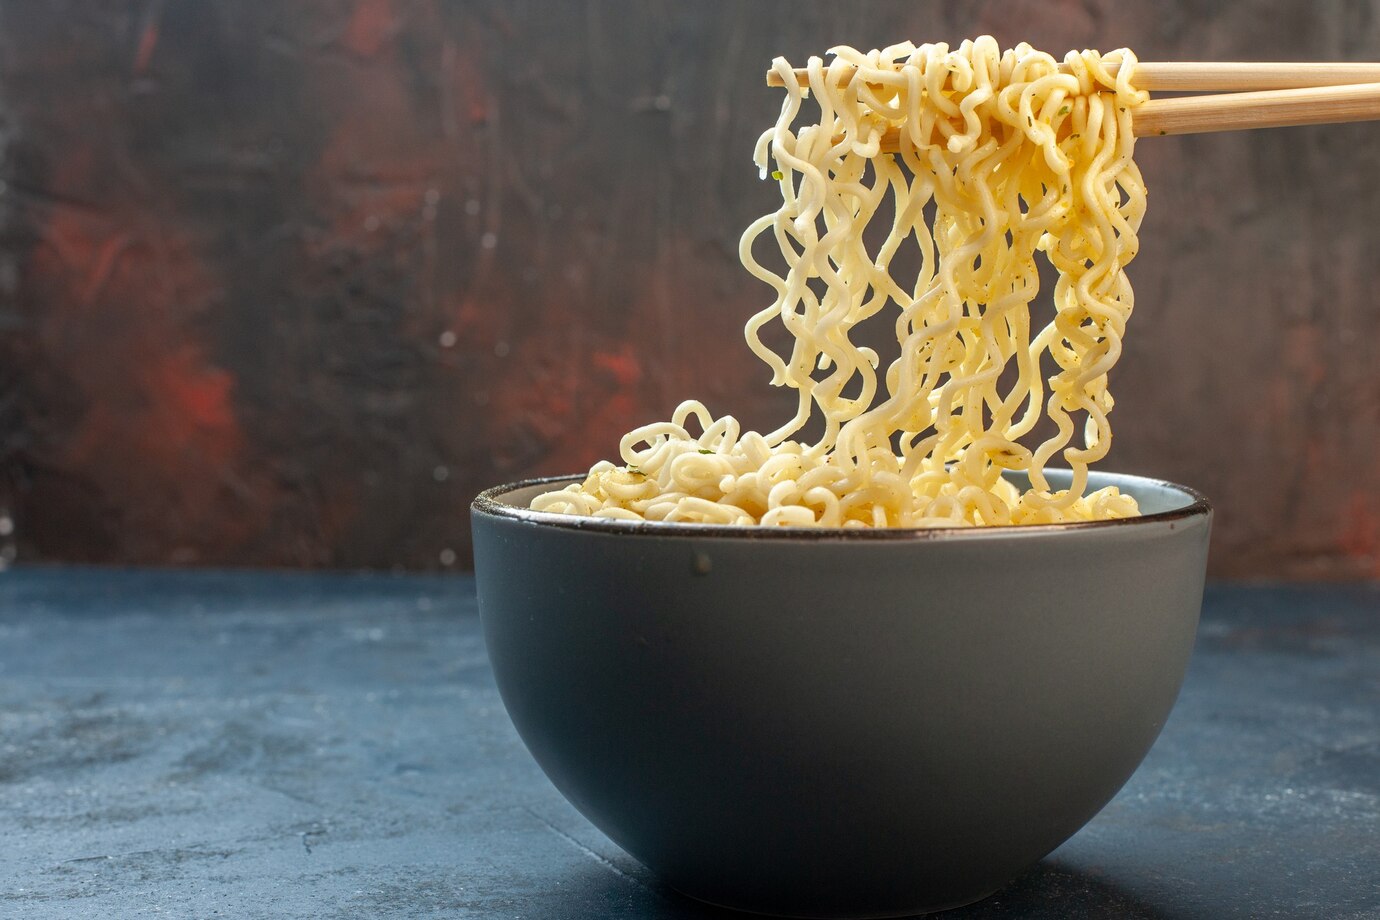  Instant noodles